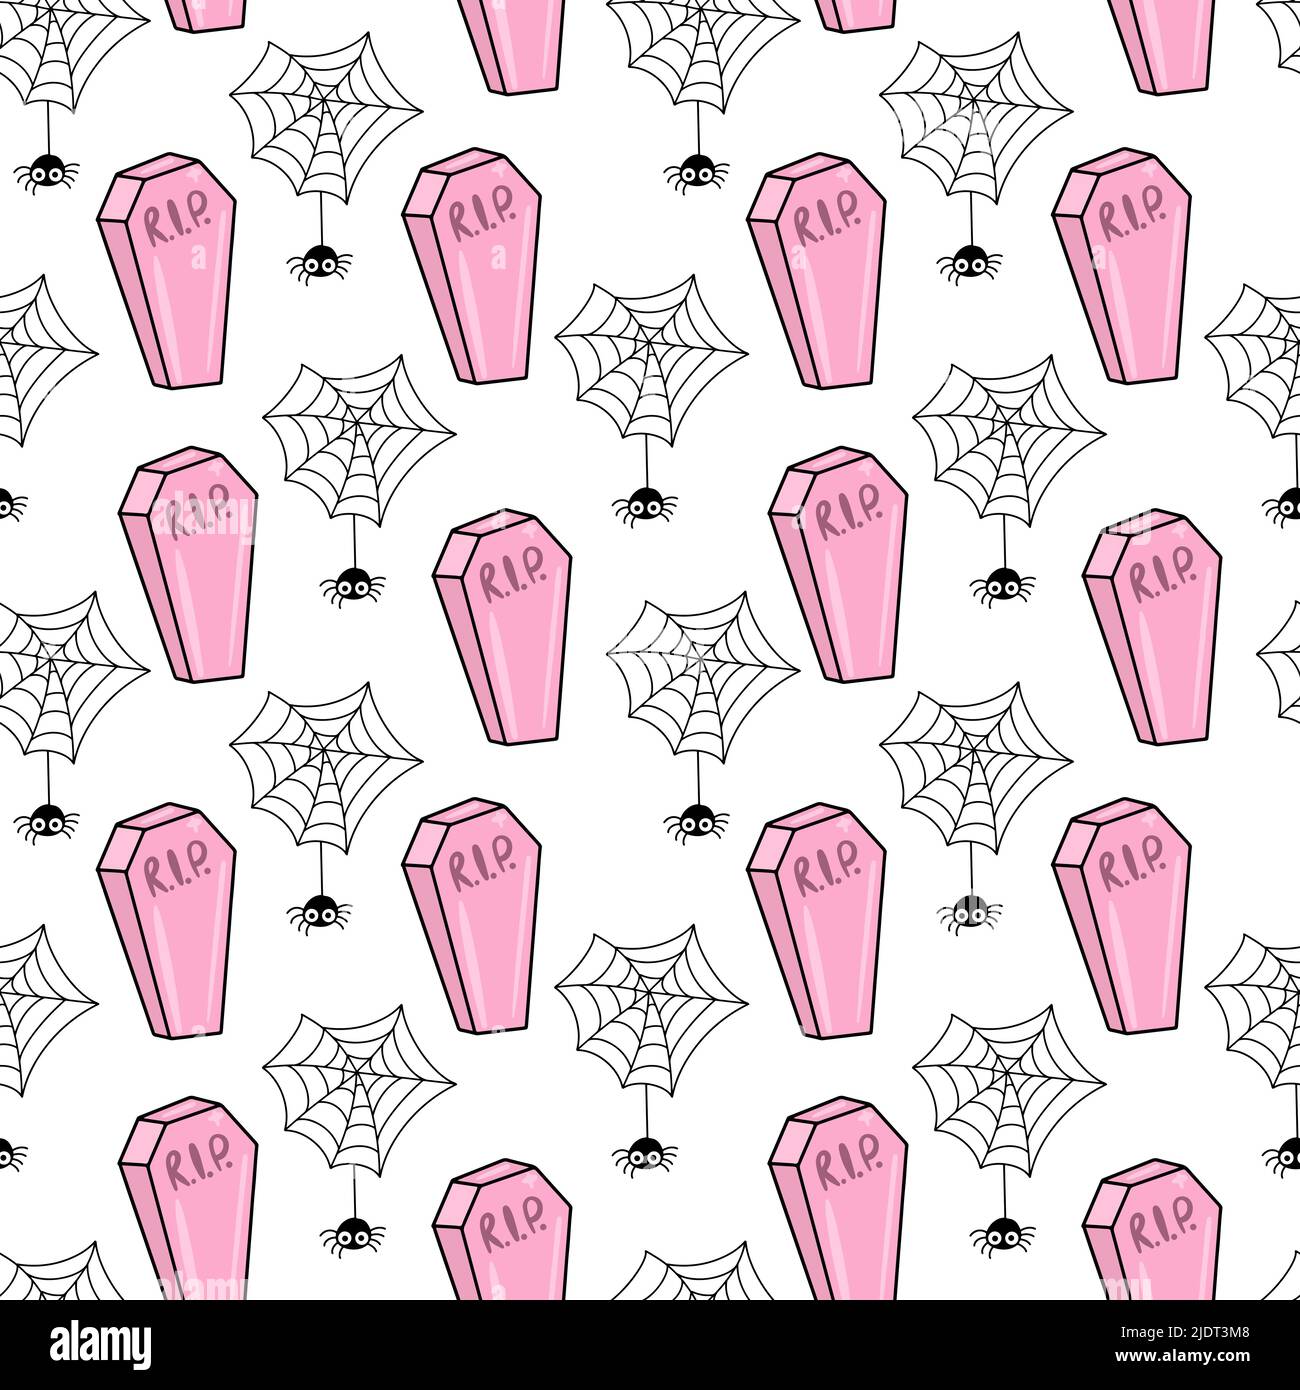 Vektor Nahtloses Muster für Halloween. Niedlicher Hintergrund mit rosa Särgen und Spinnen. Stock Vektor